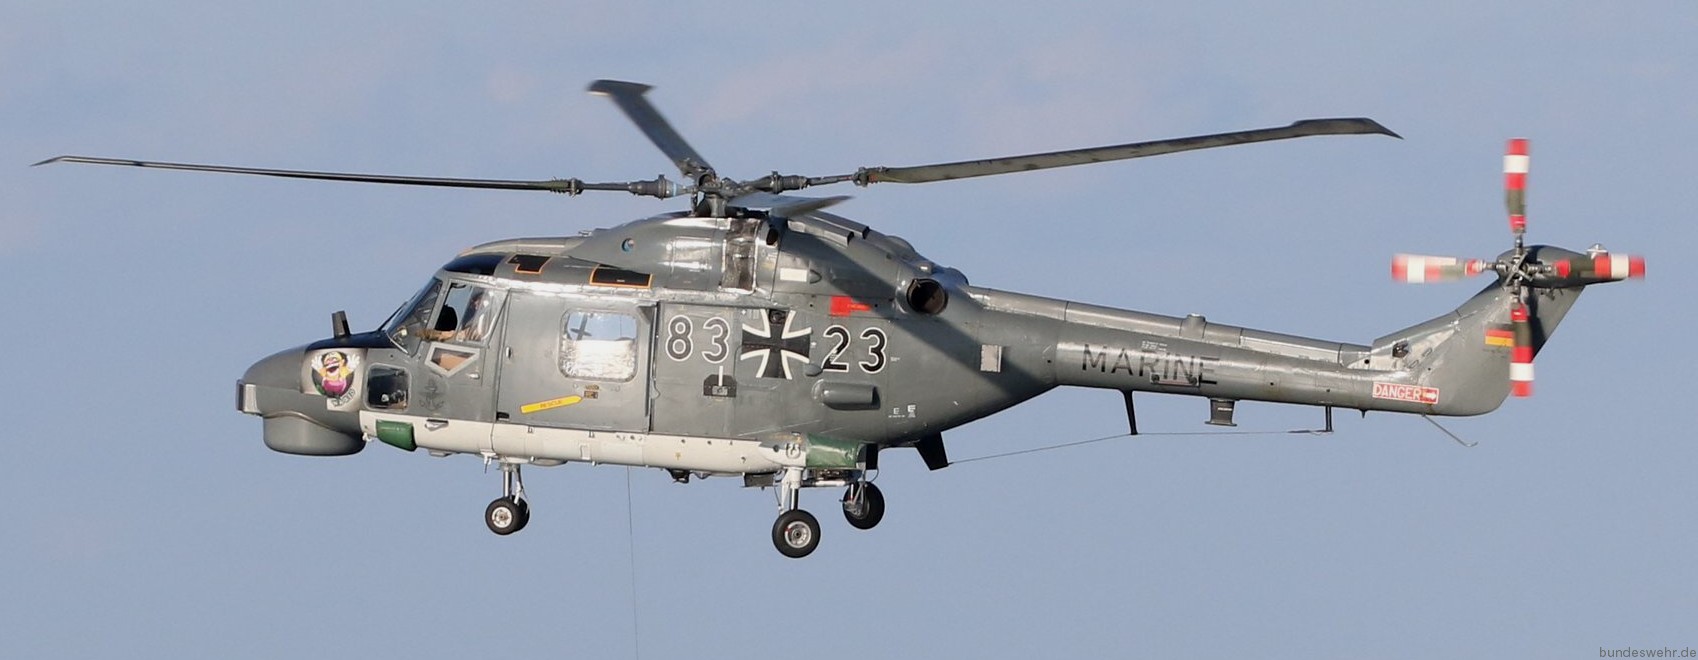 sea lynx mk.88a westland naval helicopter german navy deutsche marine 34